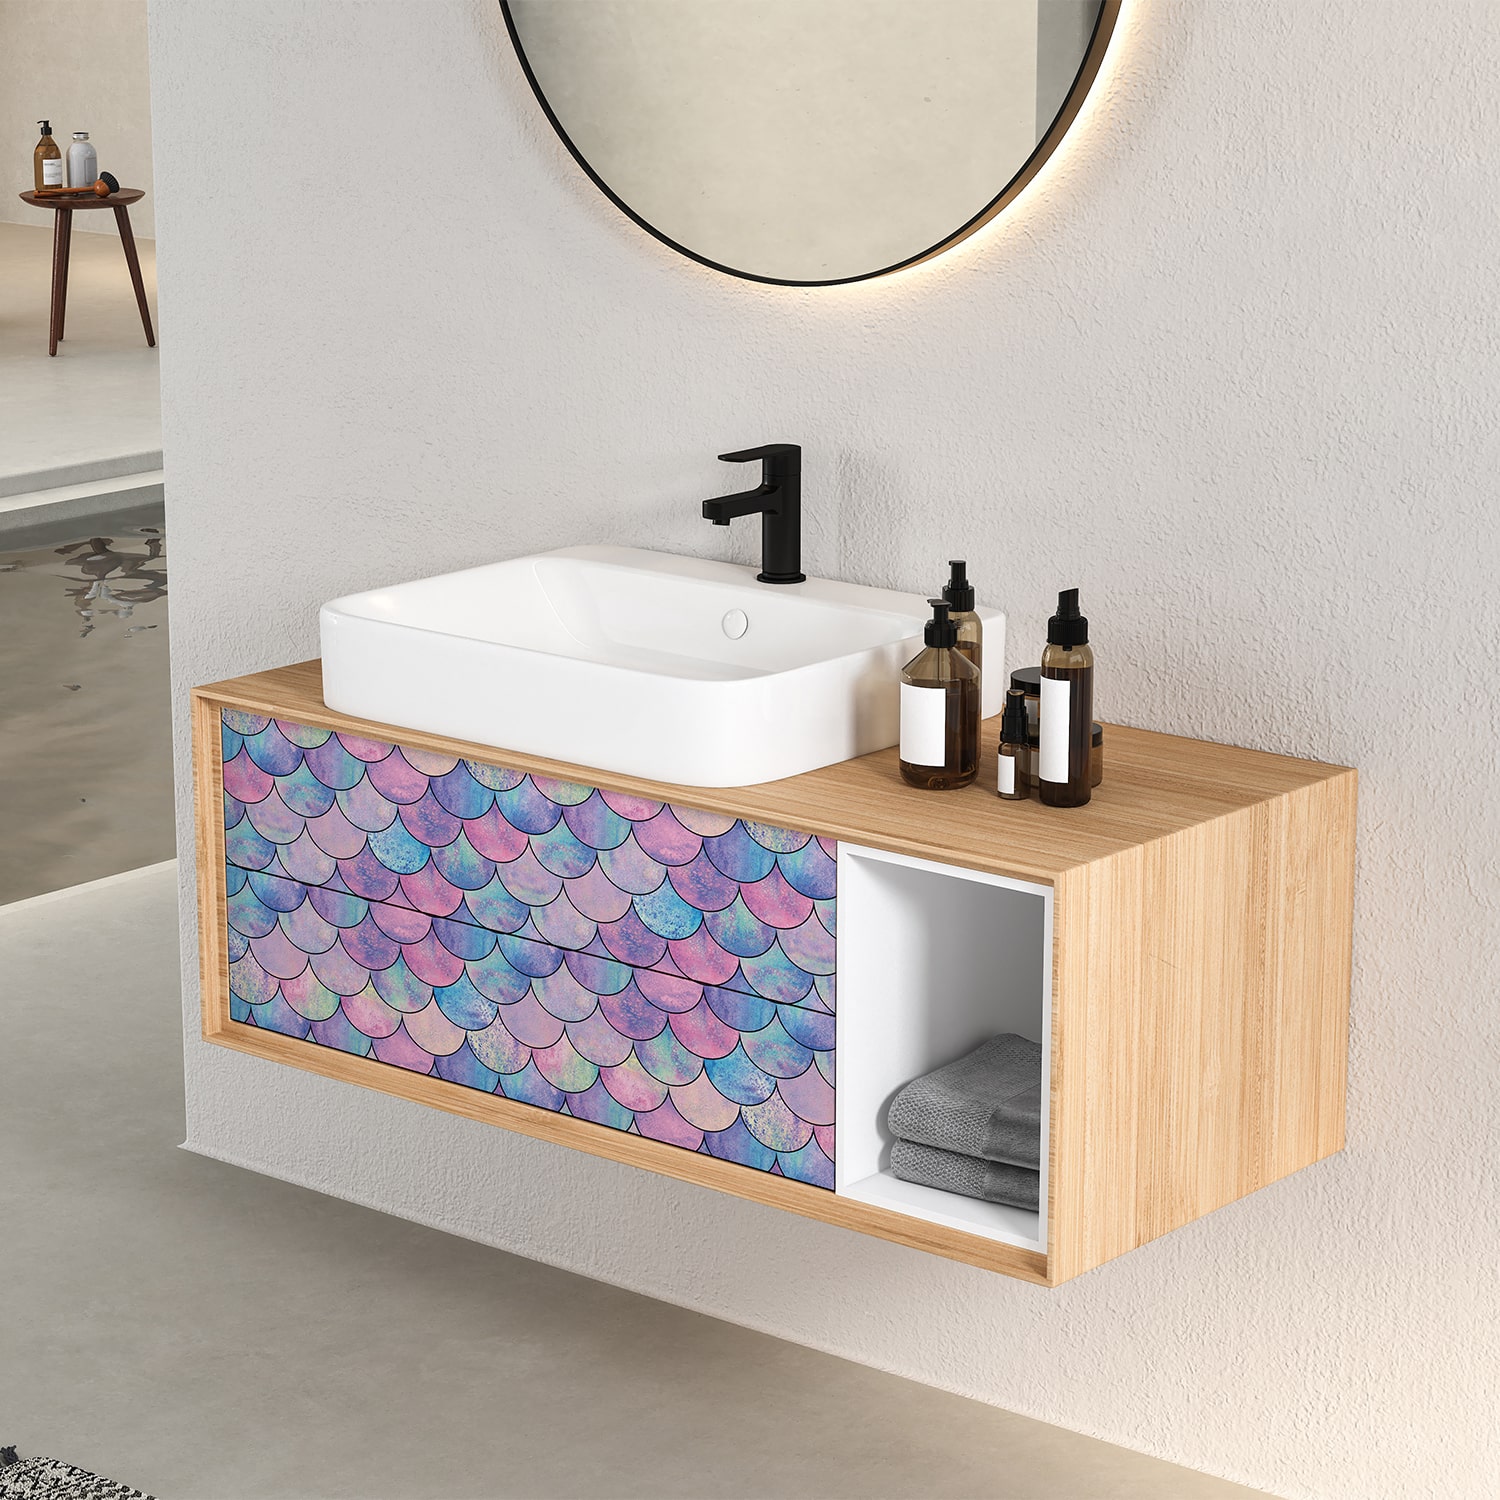 PP62-meuble-papier-peint-adhesif-decoratif-revetement-vinyle-motifs-ecaille-de-poisson-multicolore-renovation-meuble-mur-min